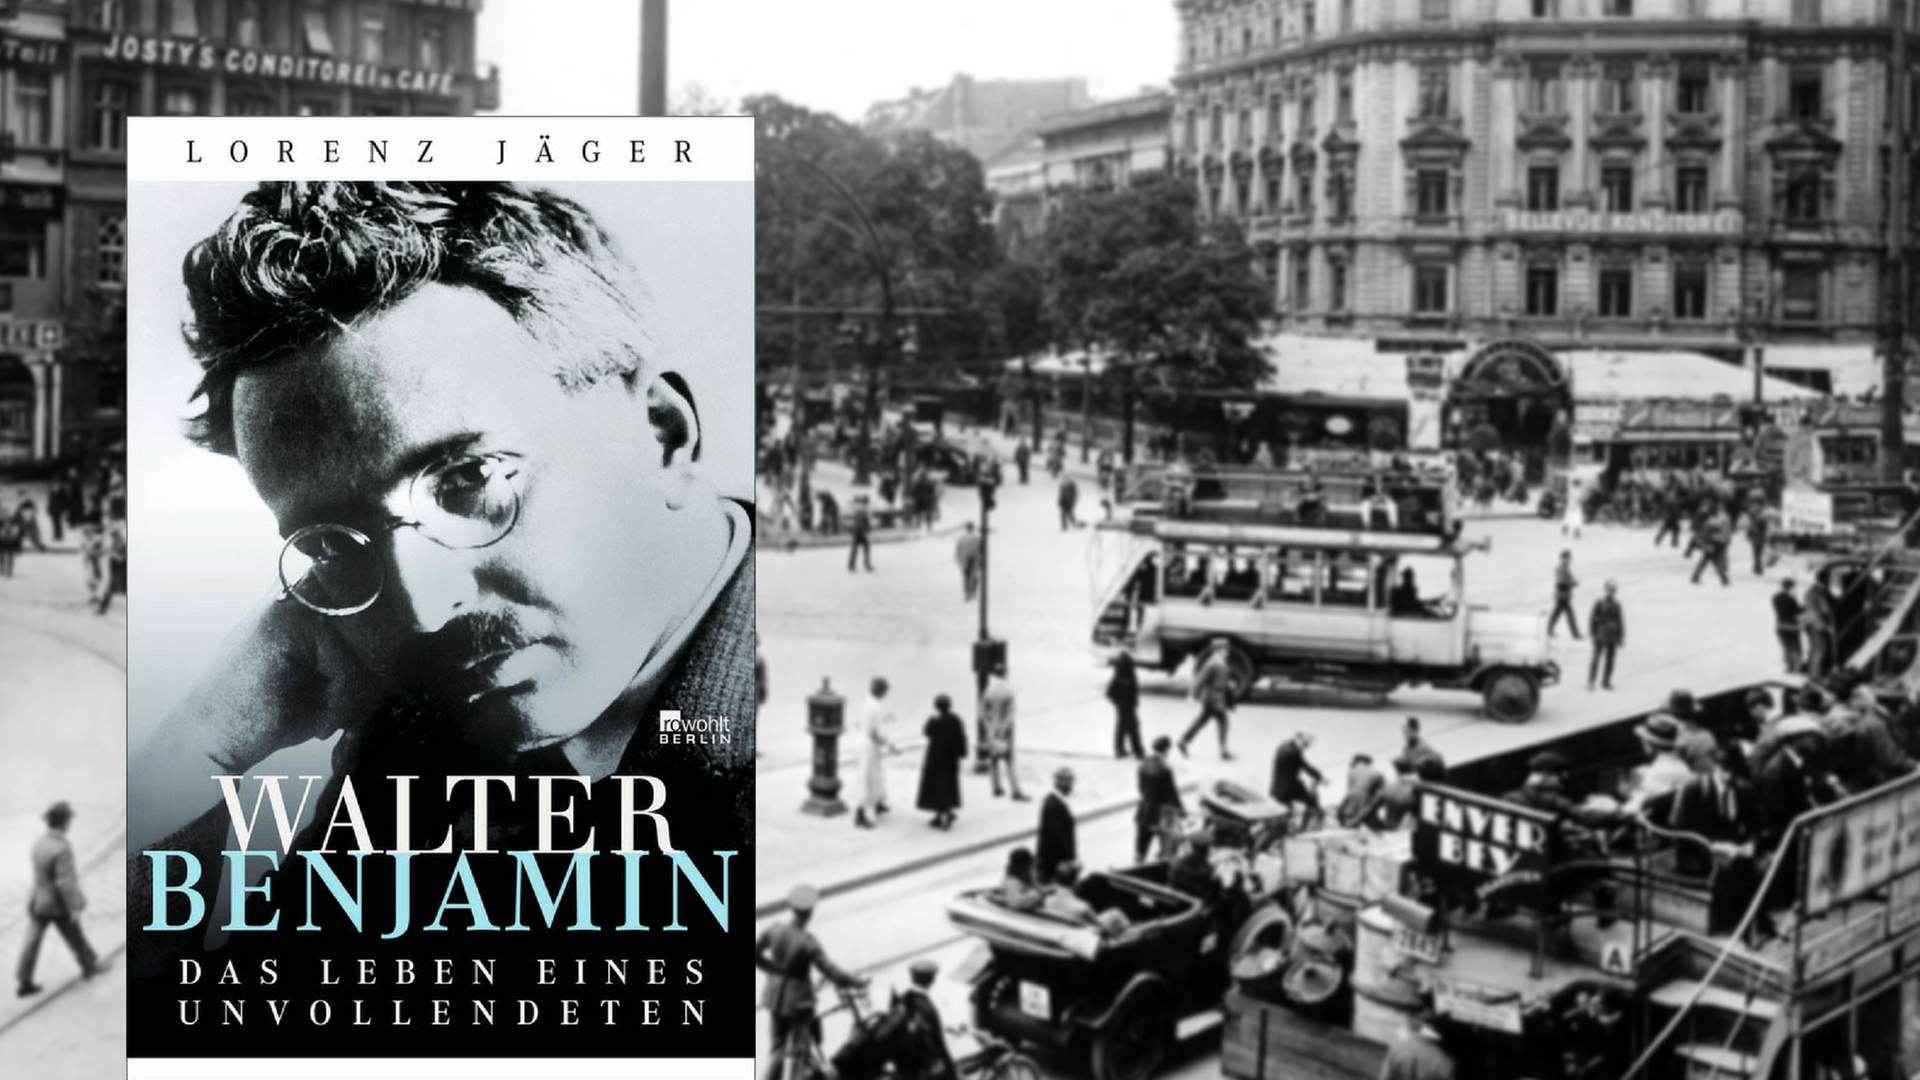 "Walter Benjamin. Das Leben eines Unvollendeten" von Lorenz Jäger. Im Hintergrund der Potsdamer Platz im Berlin der 1920er-Jahre.